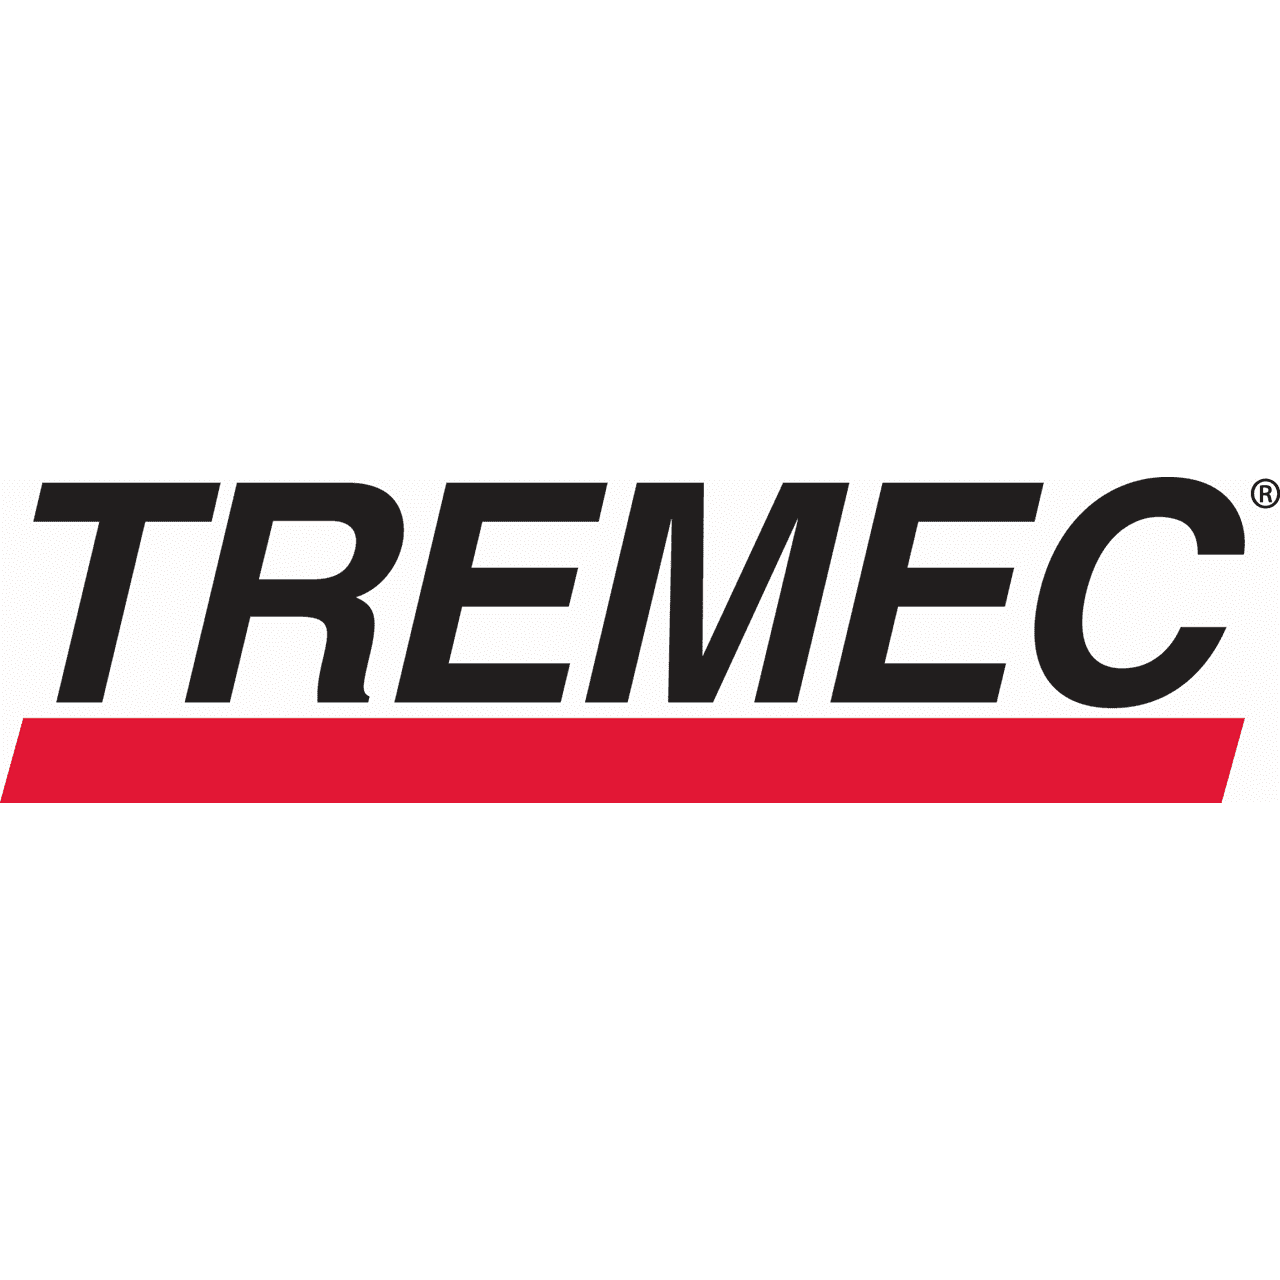 TREMEC - Test Engineer